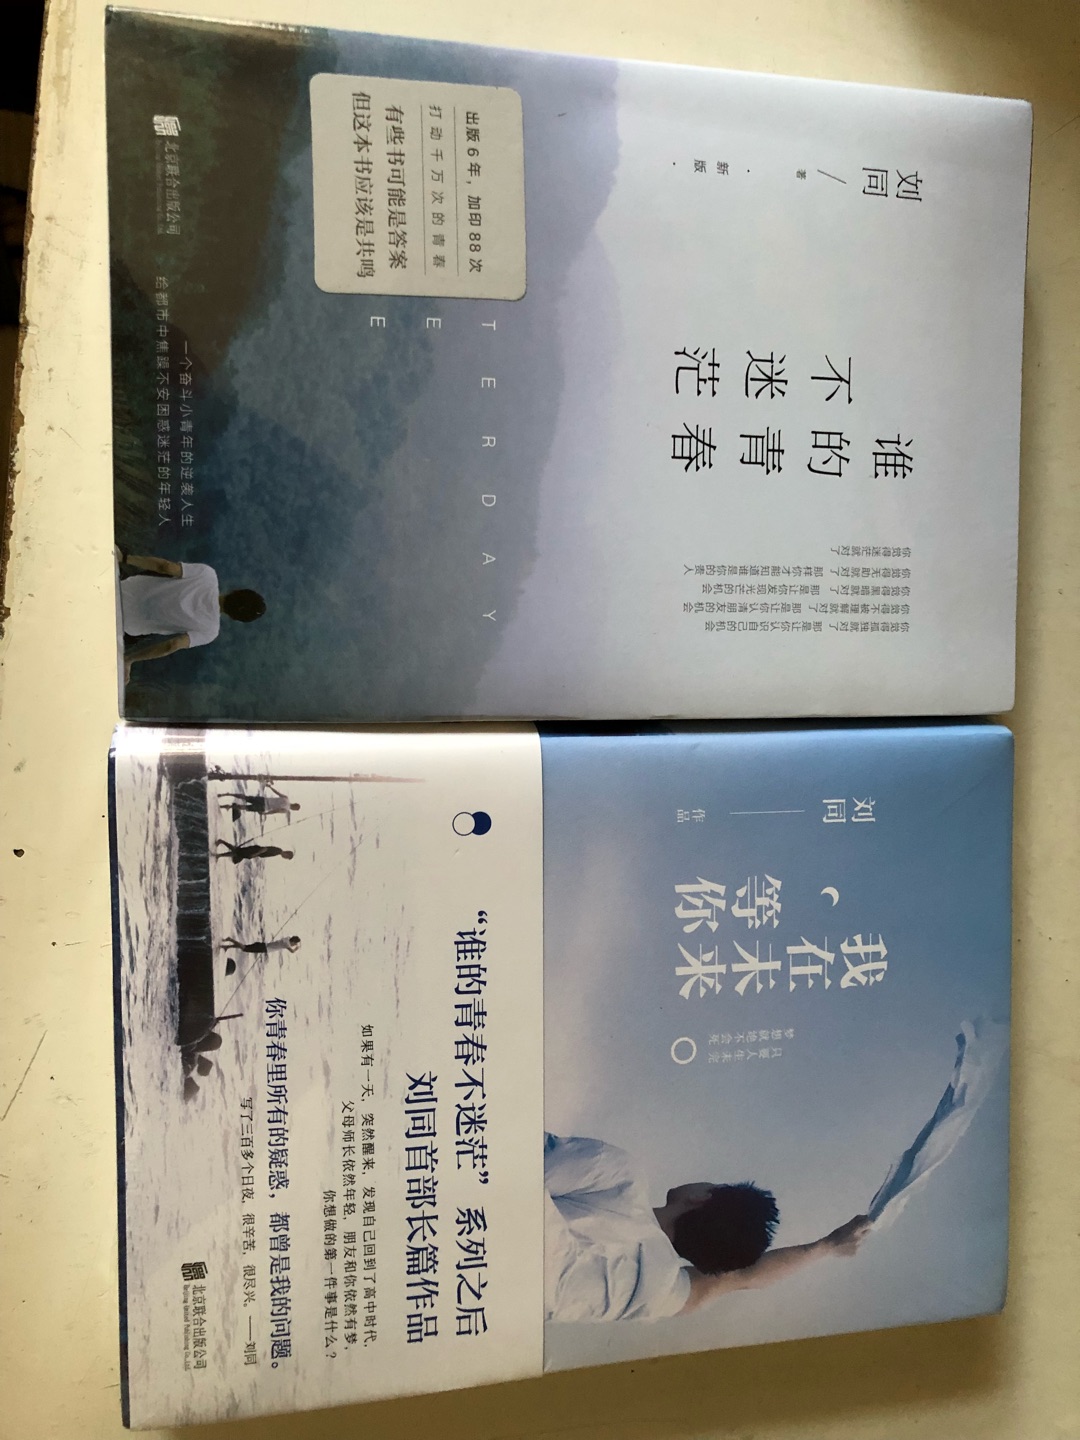 支持刘同的书之前买过三部曲，现在又买了这两本书.